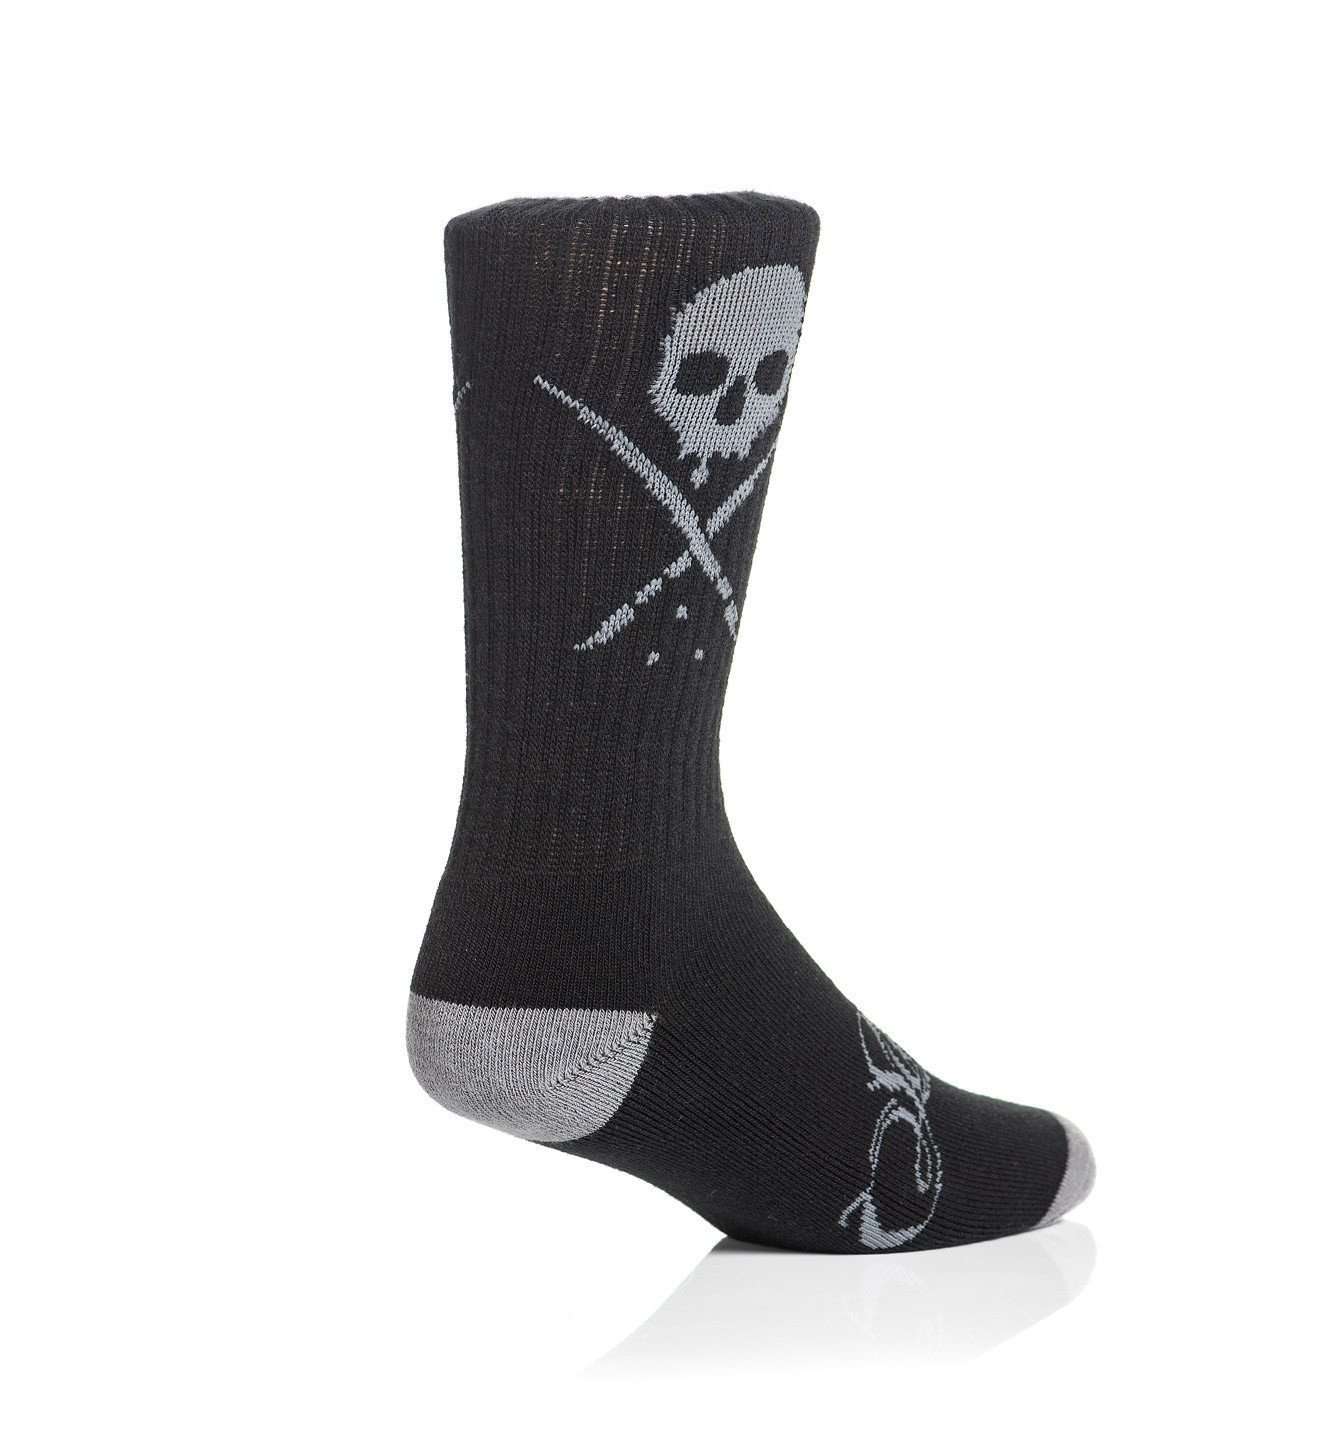 Standard Issue Socks Black/Gray - Sullen Art Co.